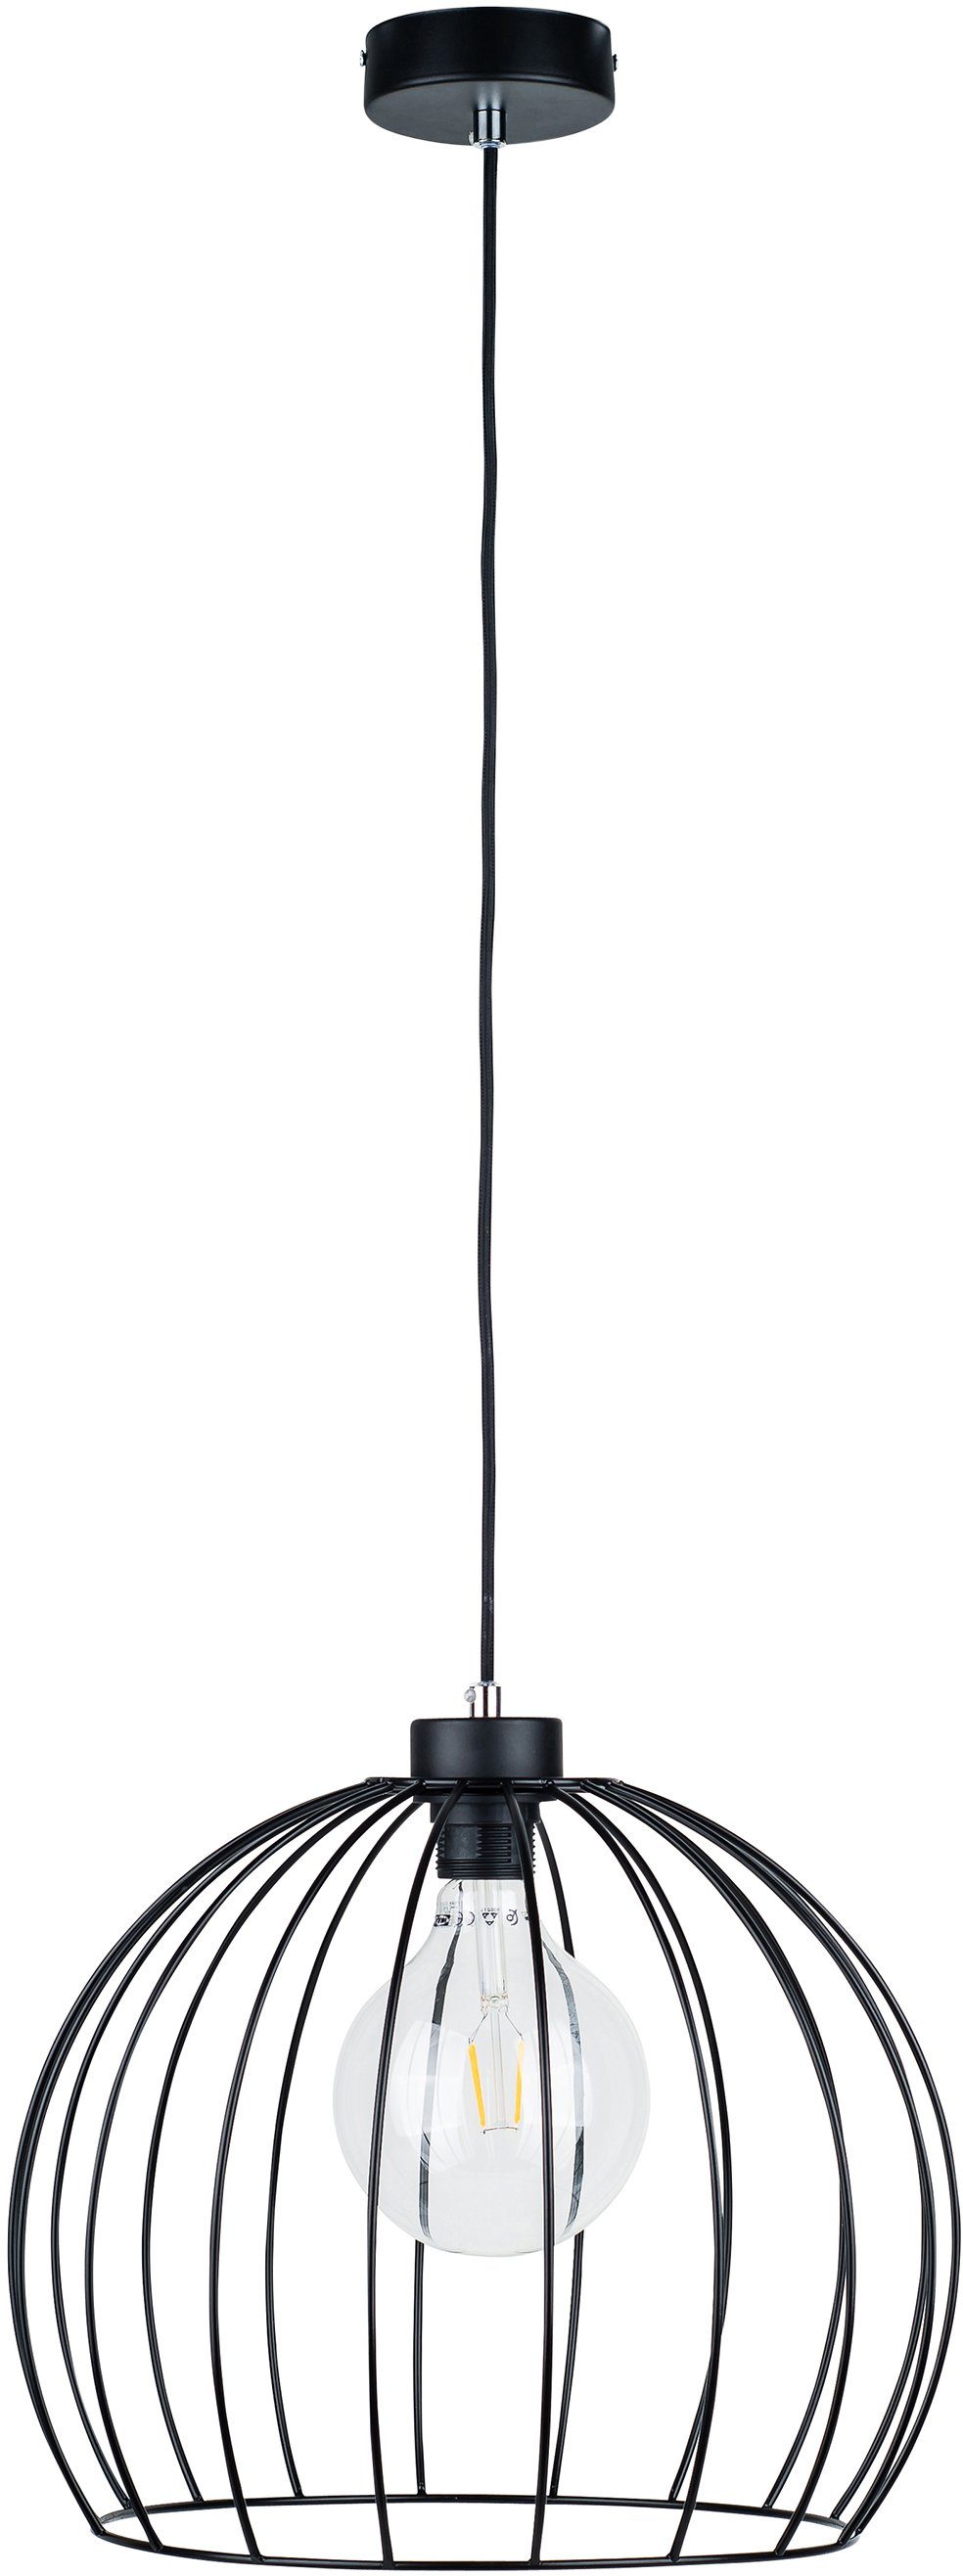 BRITOP LIGHTING Hanglamp COOP Decoratieve lamp van metaal, bijpassende LM E27 / exclusief, Made in Europe (1 stuk)